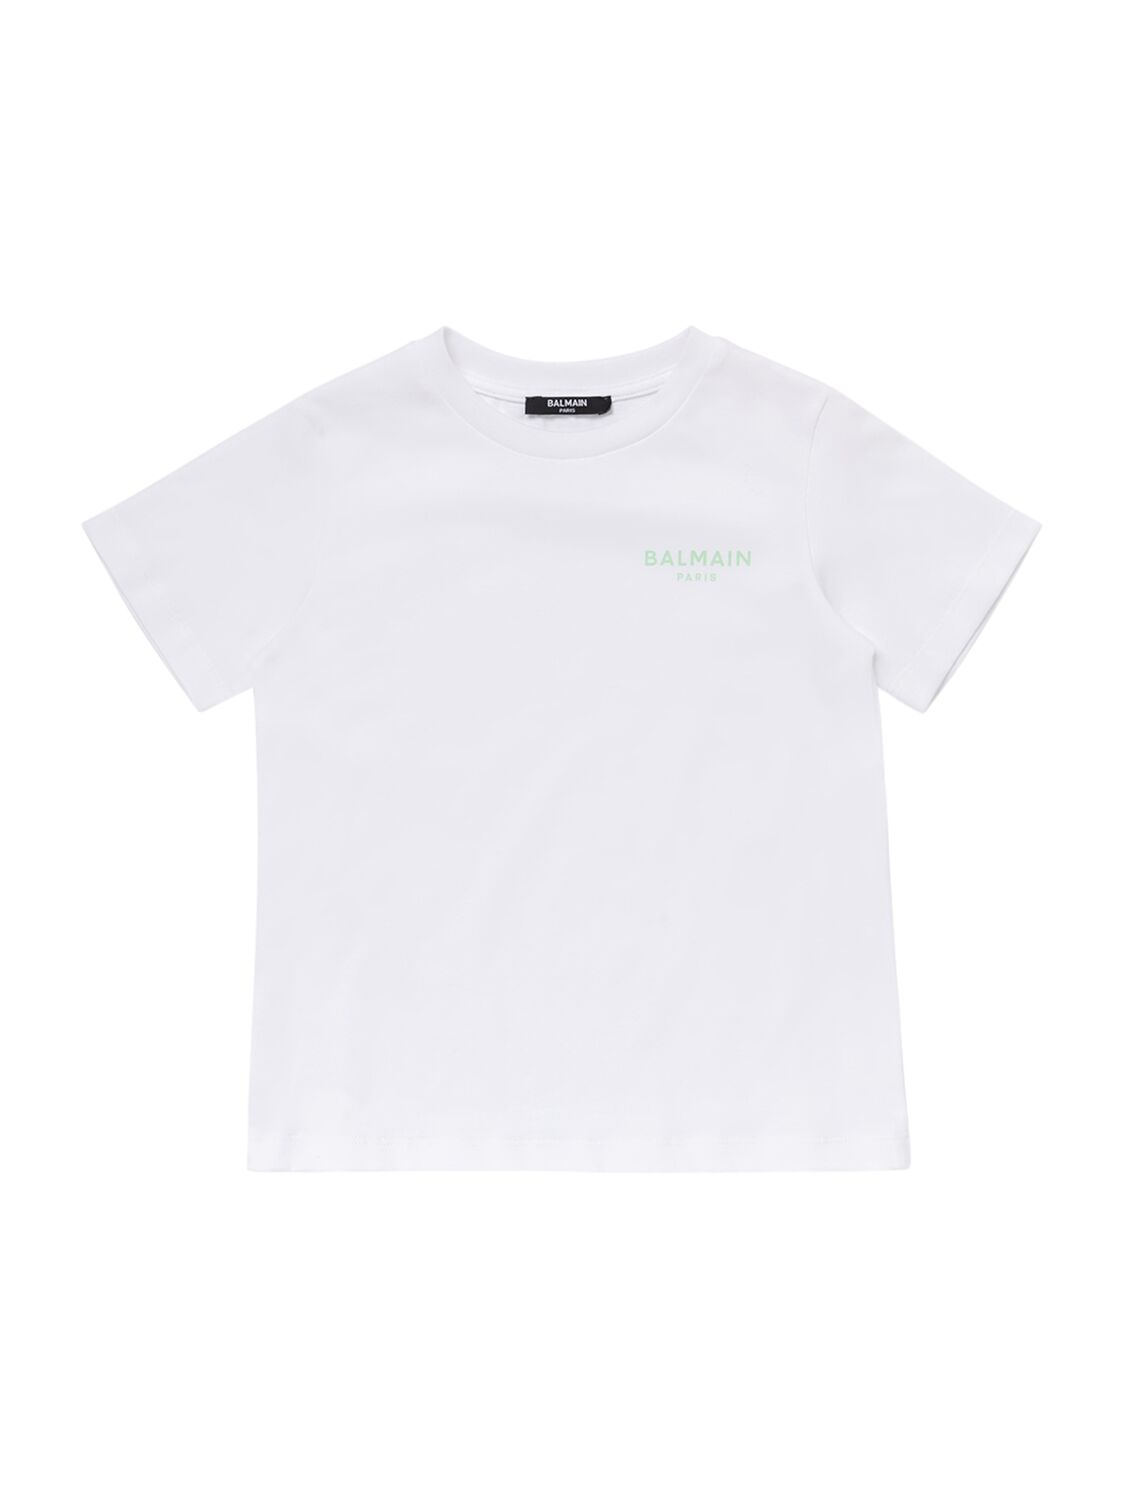 Balmain Kids' Printed Cotton Jersey T-shirt In White,black